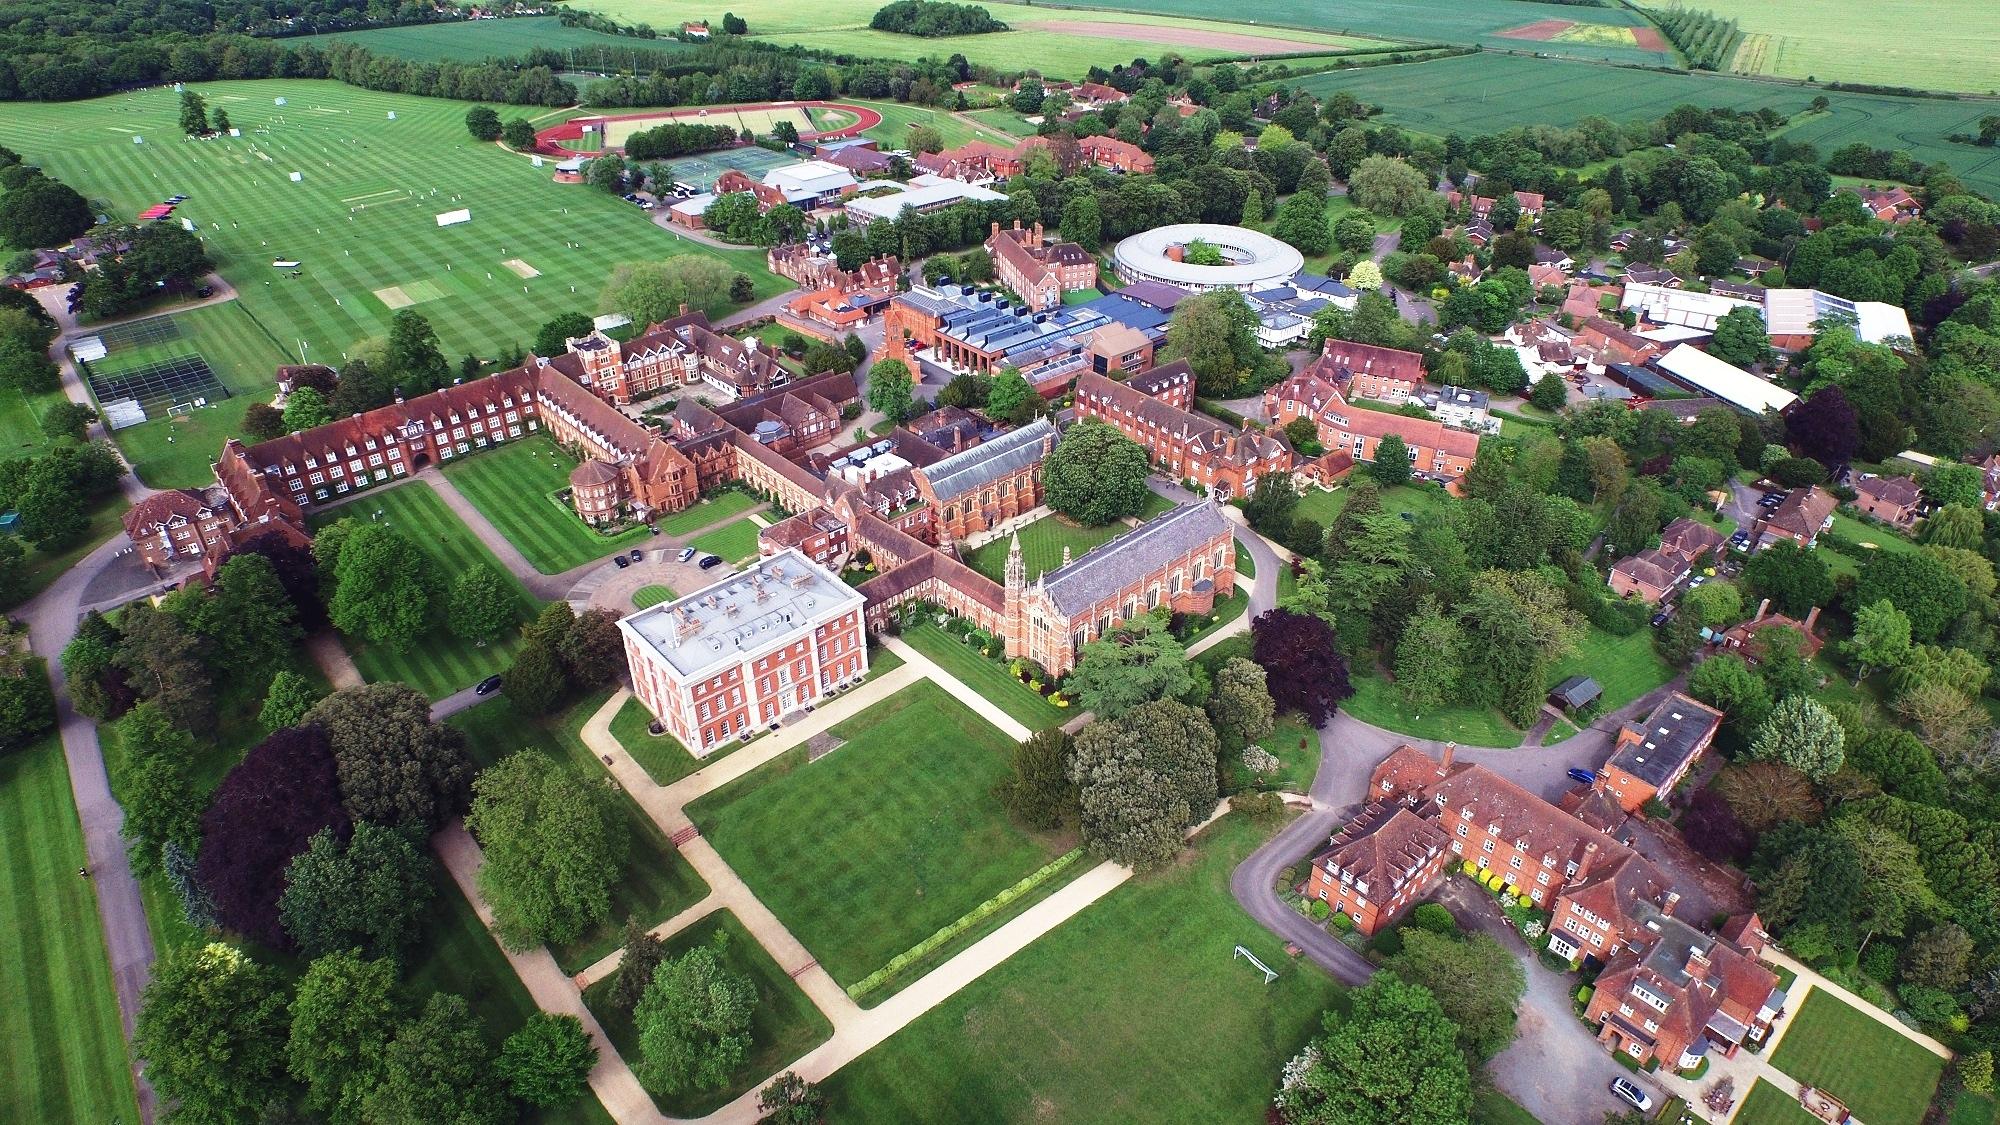 Radley College - вид с высоты на территорию колледжа